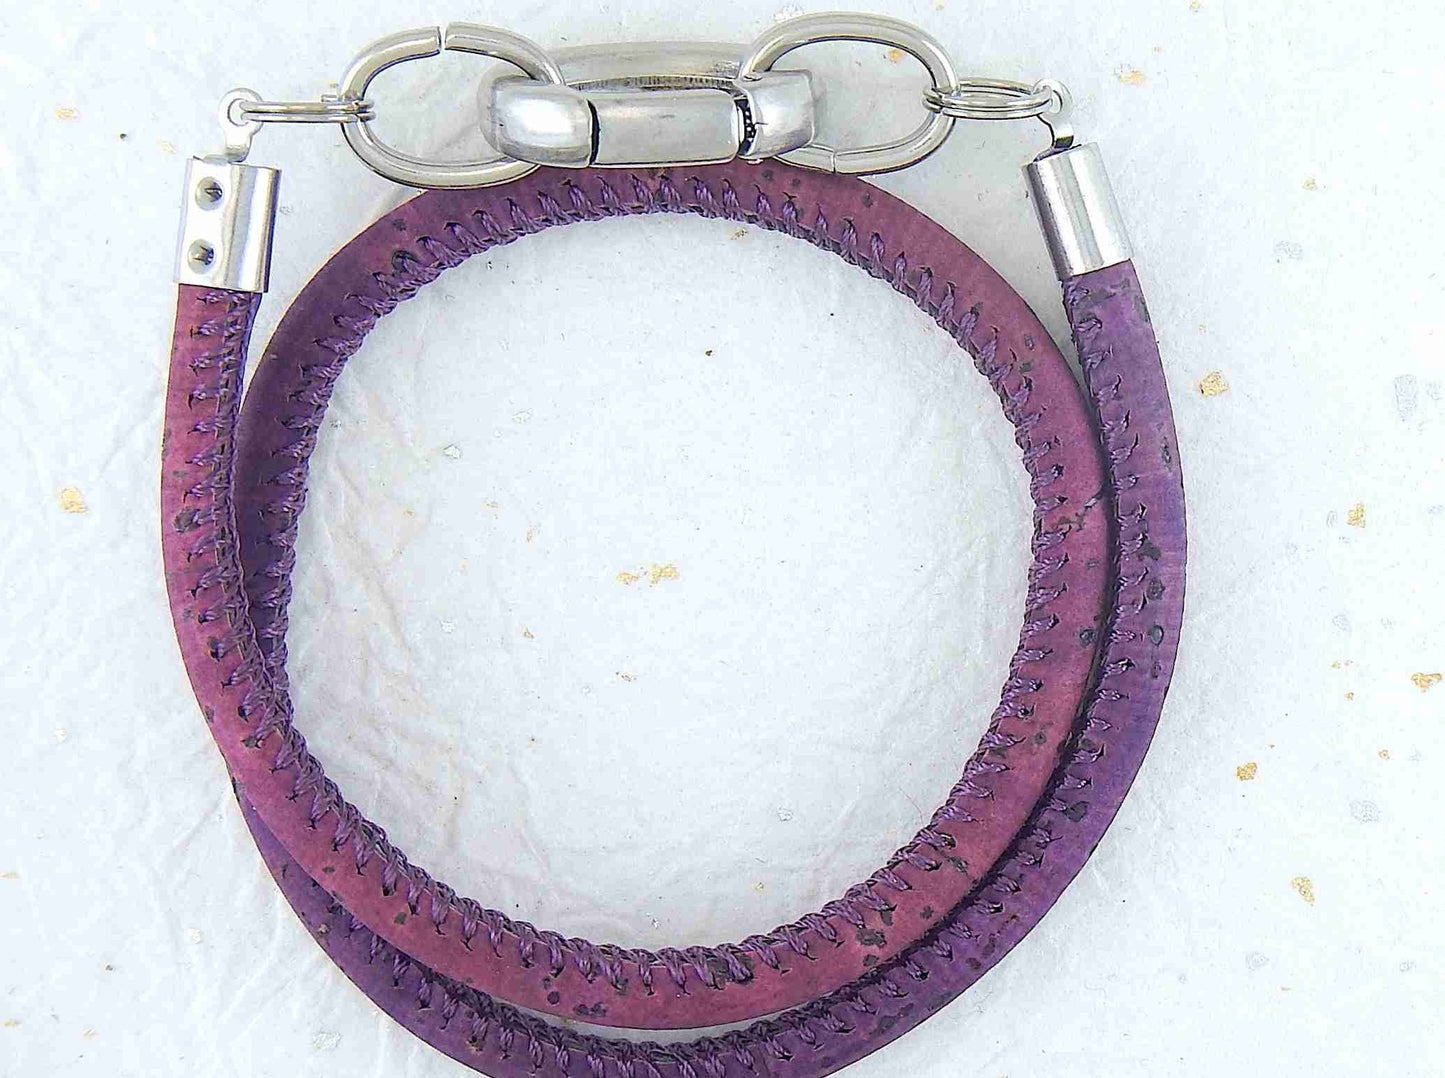 Bracelet 2 tours de liège rond 6mm avec fermoir ovale acier inoxydable en 4 couleurs chaudes (bourgogne, corail, baie, violet)